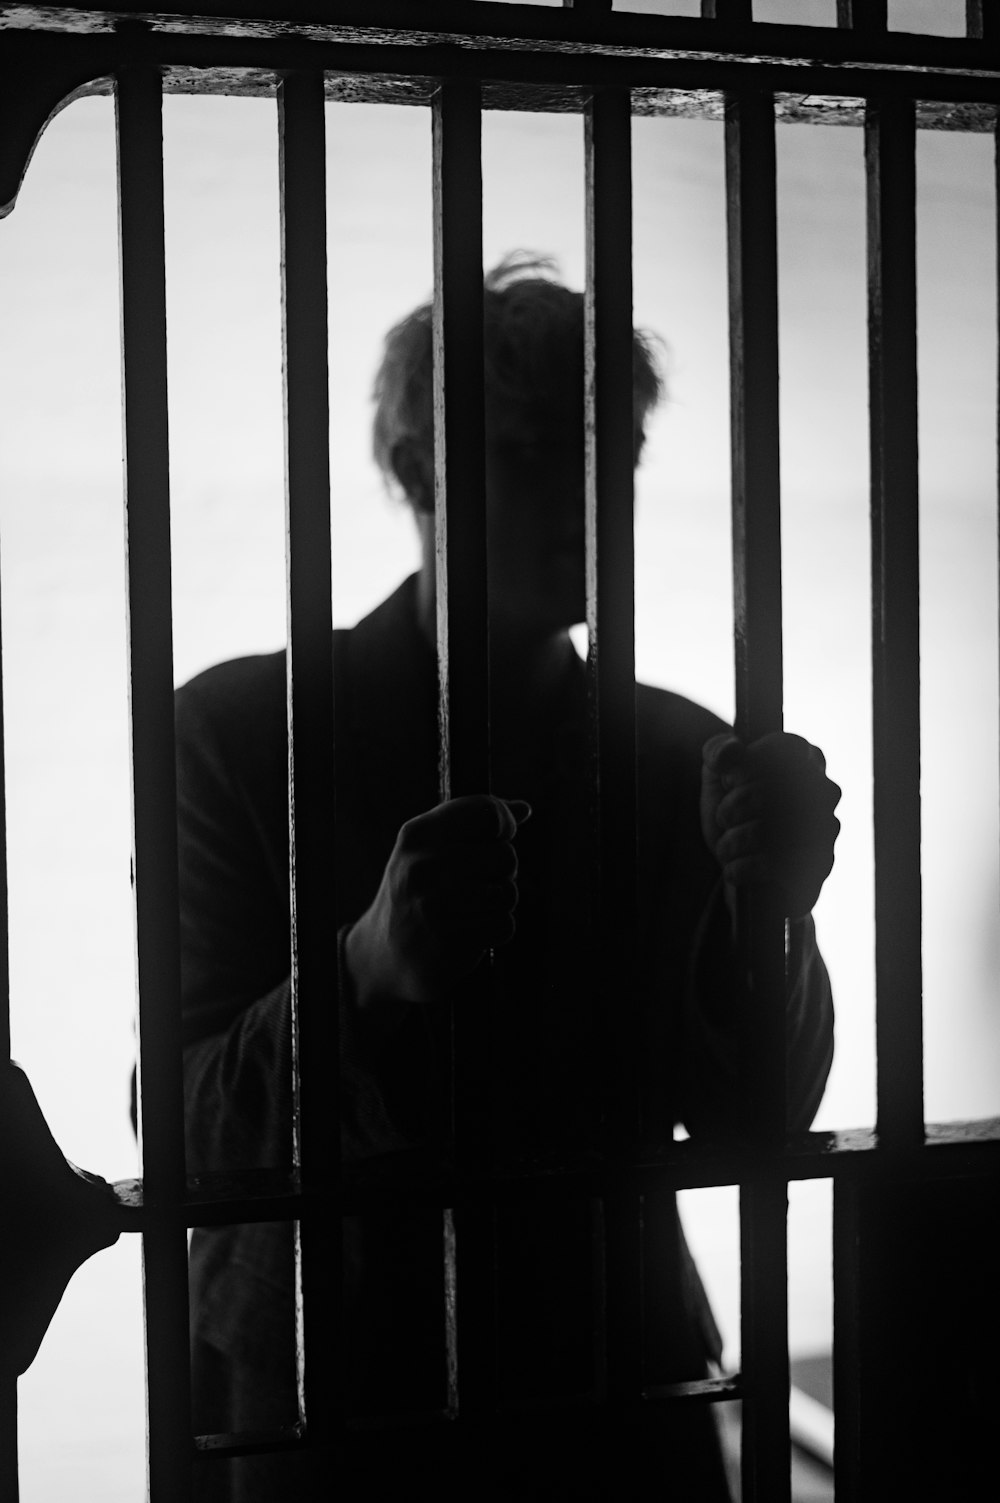 Un homme debout derrière les barreaux dans une cellule de prison